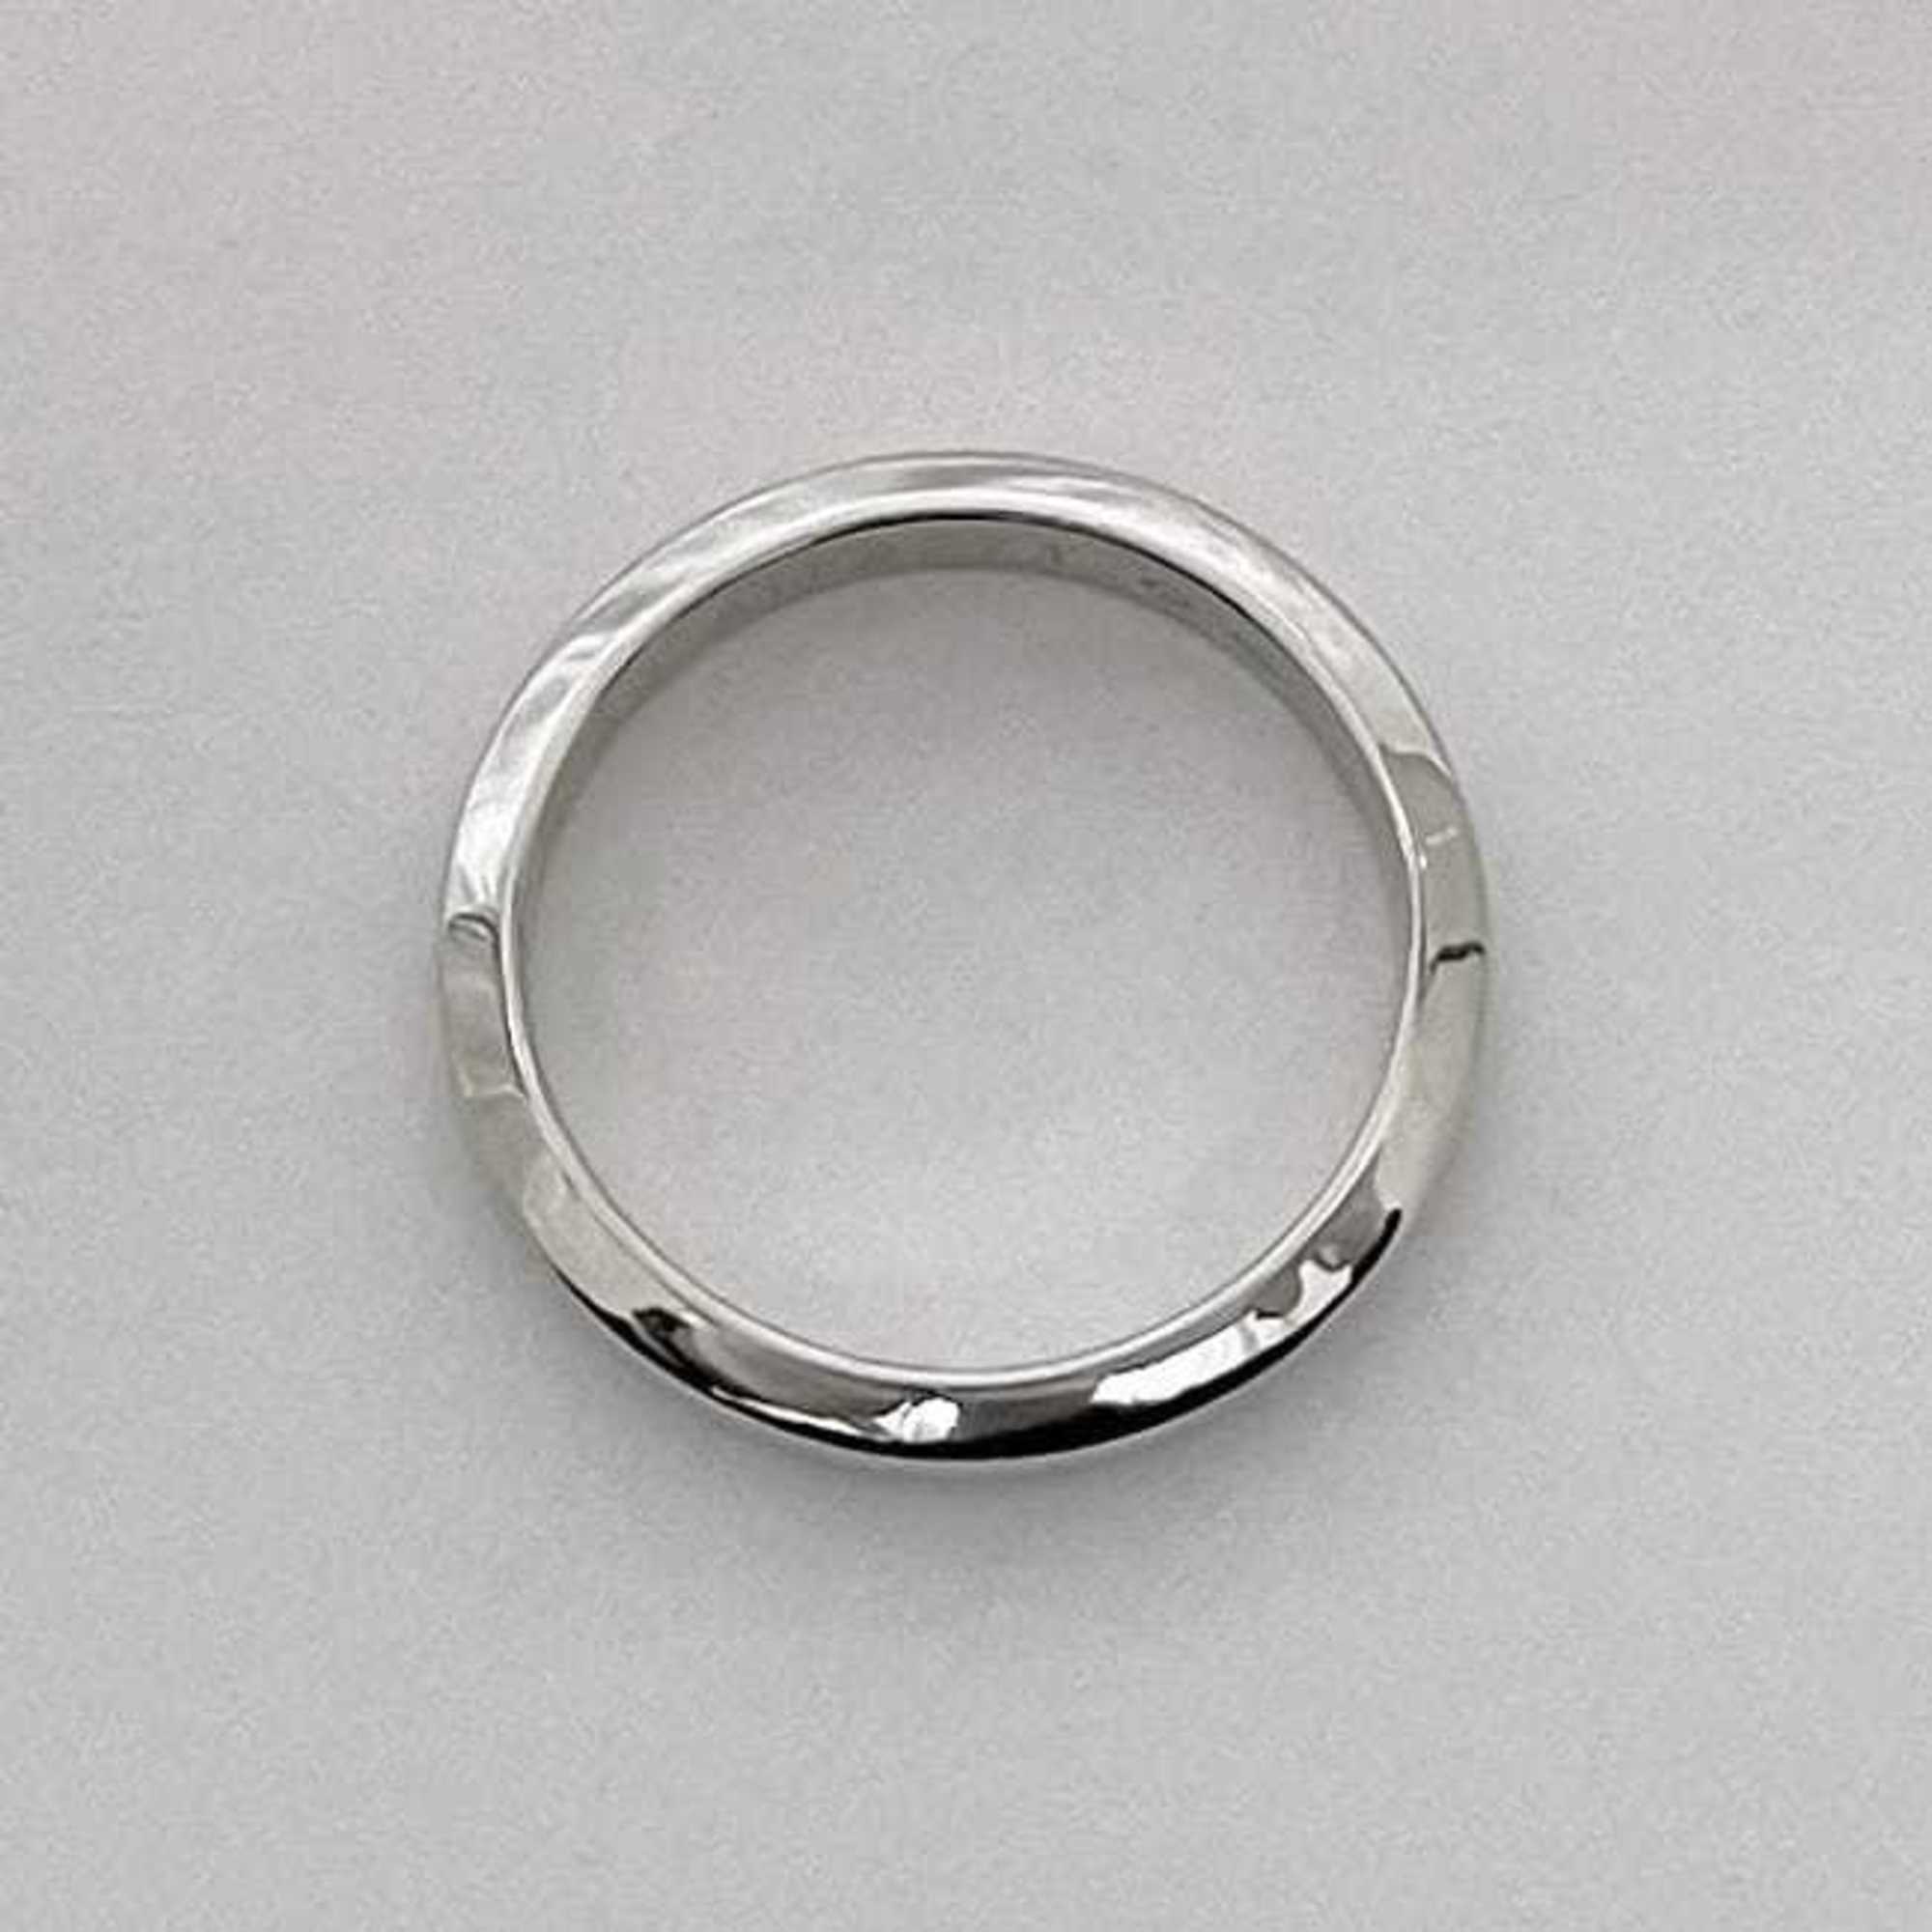 Cartier ring silver f-19996 size 10 PT950 platinum 50 Pt 950 men's women's